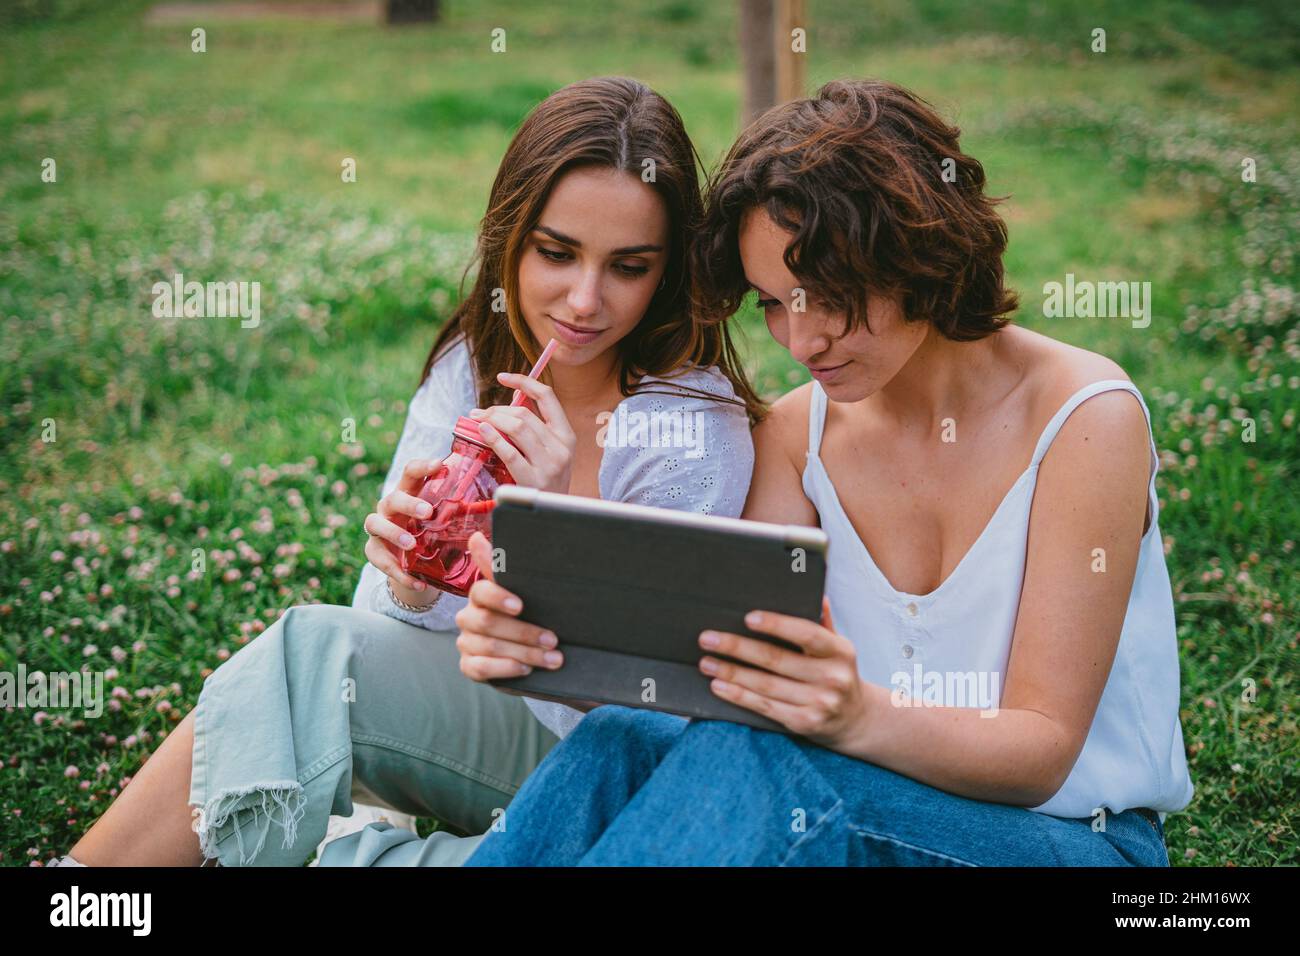 Zwei Jugendliche Studenten schauen sich im Park ein Video an, während sie sich vom Unterricht ausruhen Stockfoto